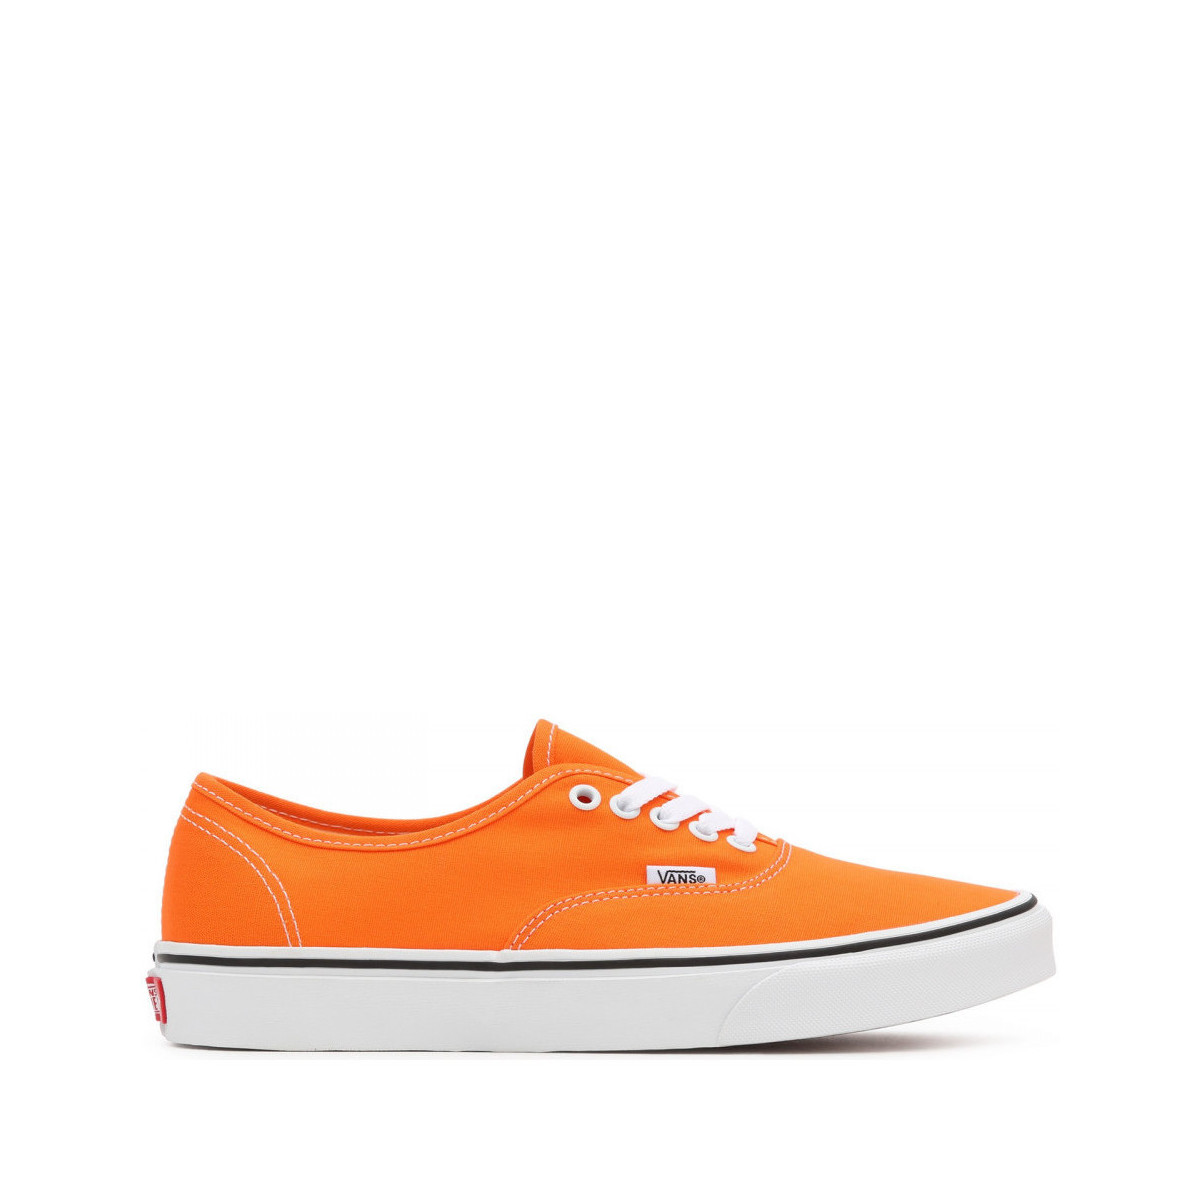 Παπούτσια Skate Παπούτσια Vans Authentic Orange